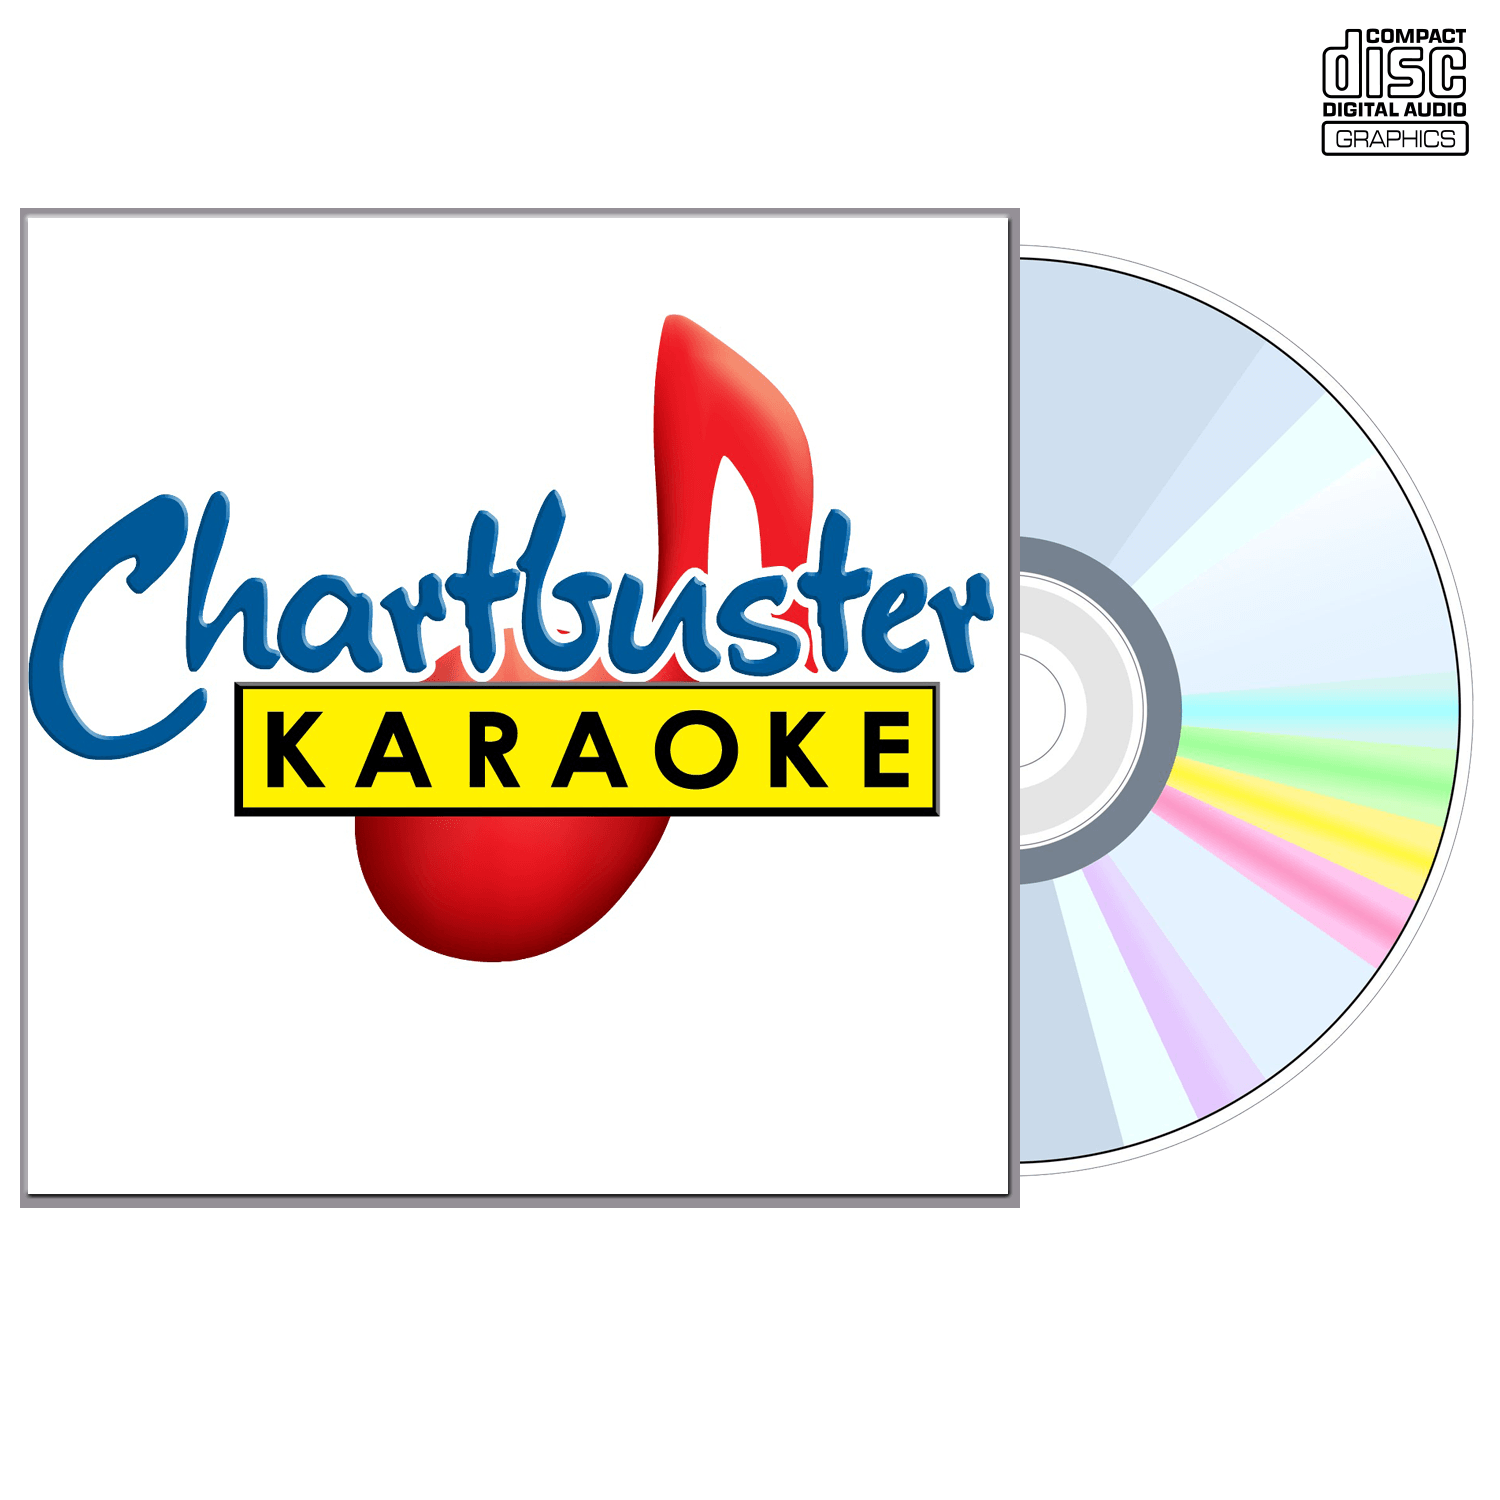 Brad Paisley Vol 2 - CD+G - Chartbuster Karaoke - Karaoke Home Entertainment